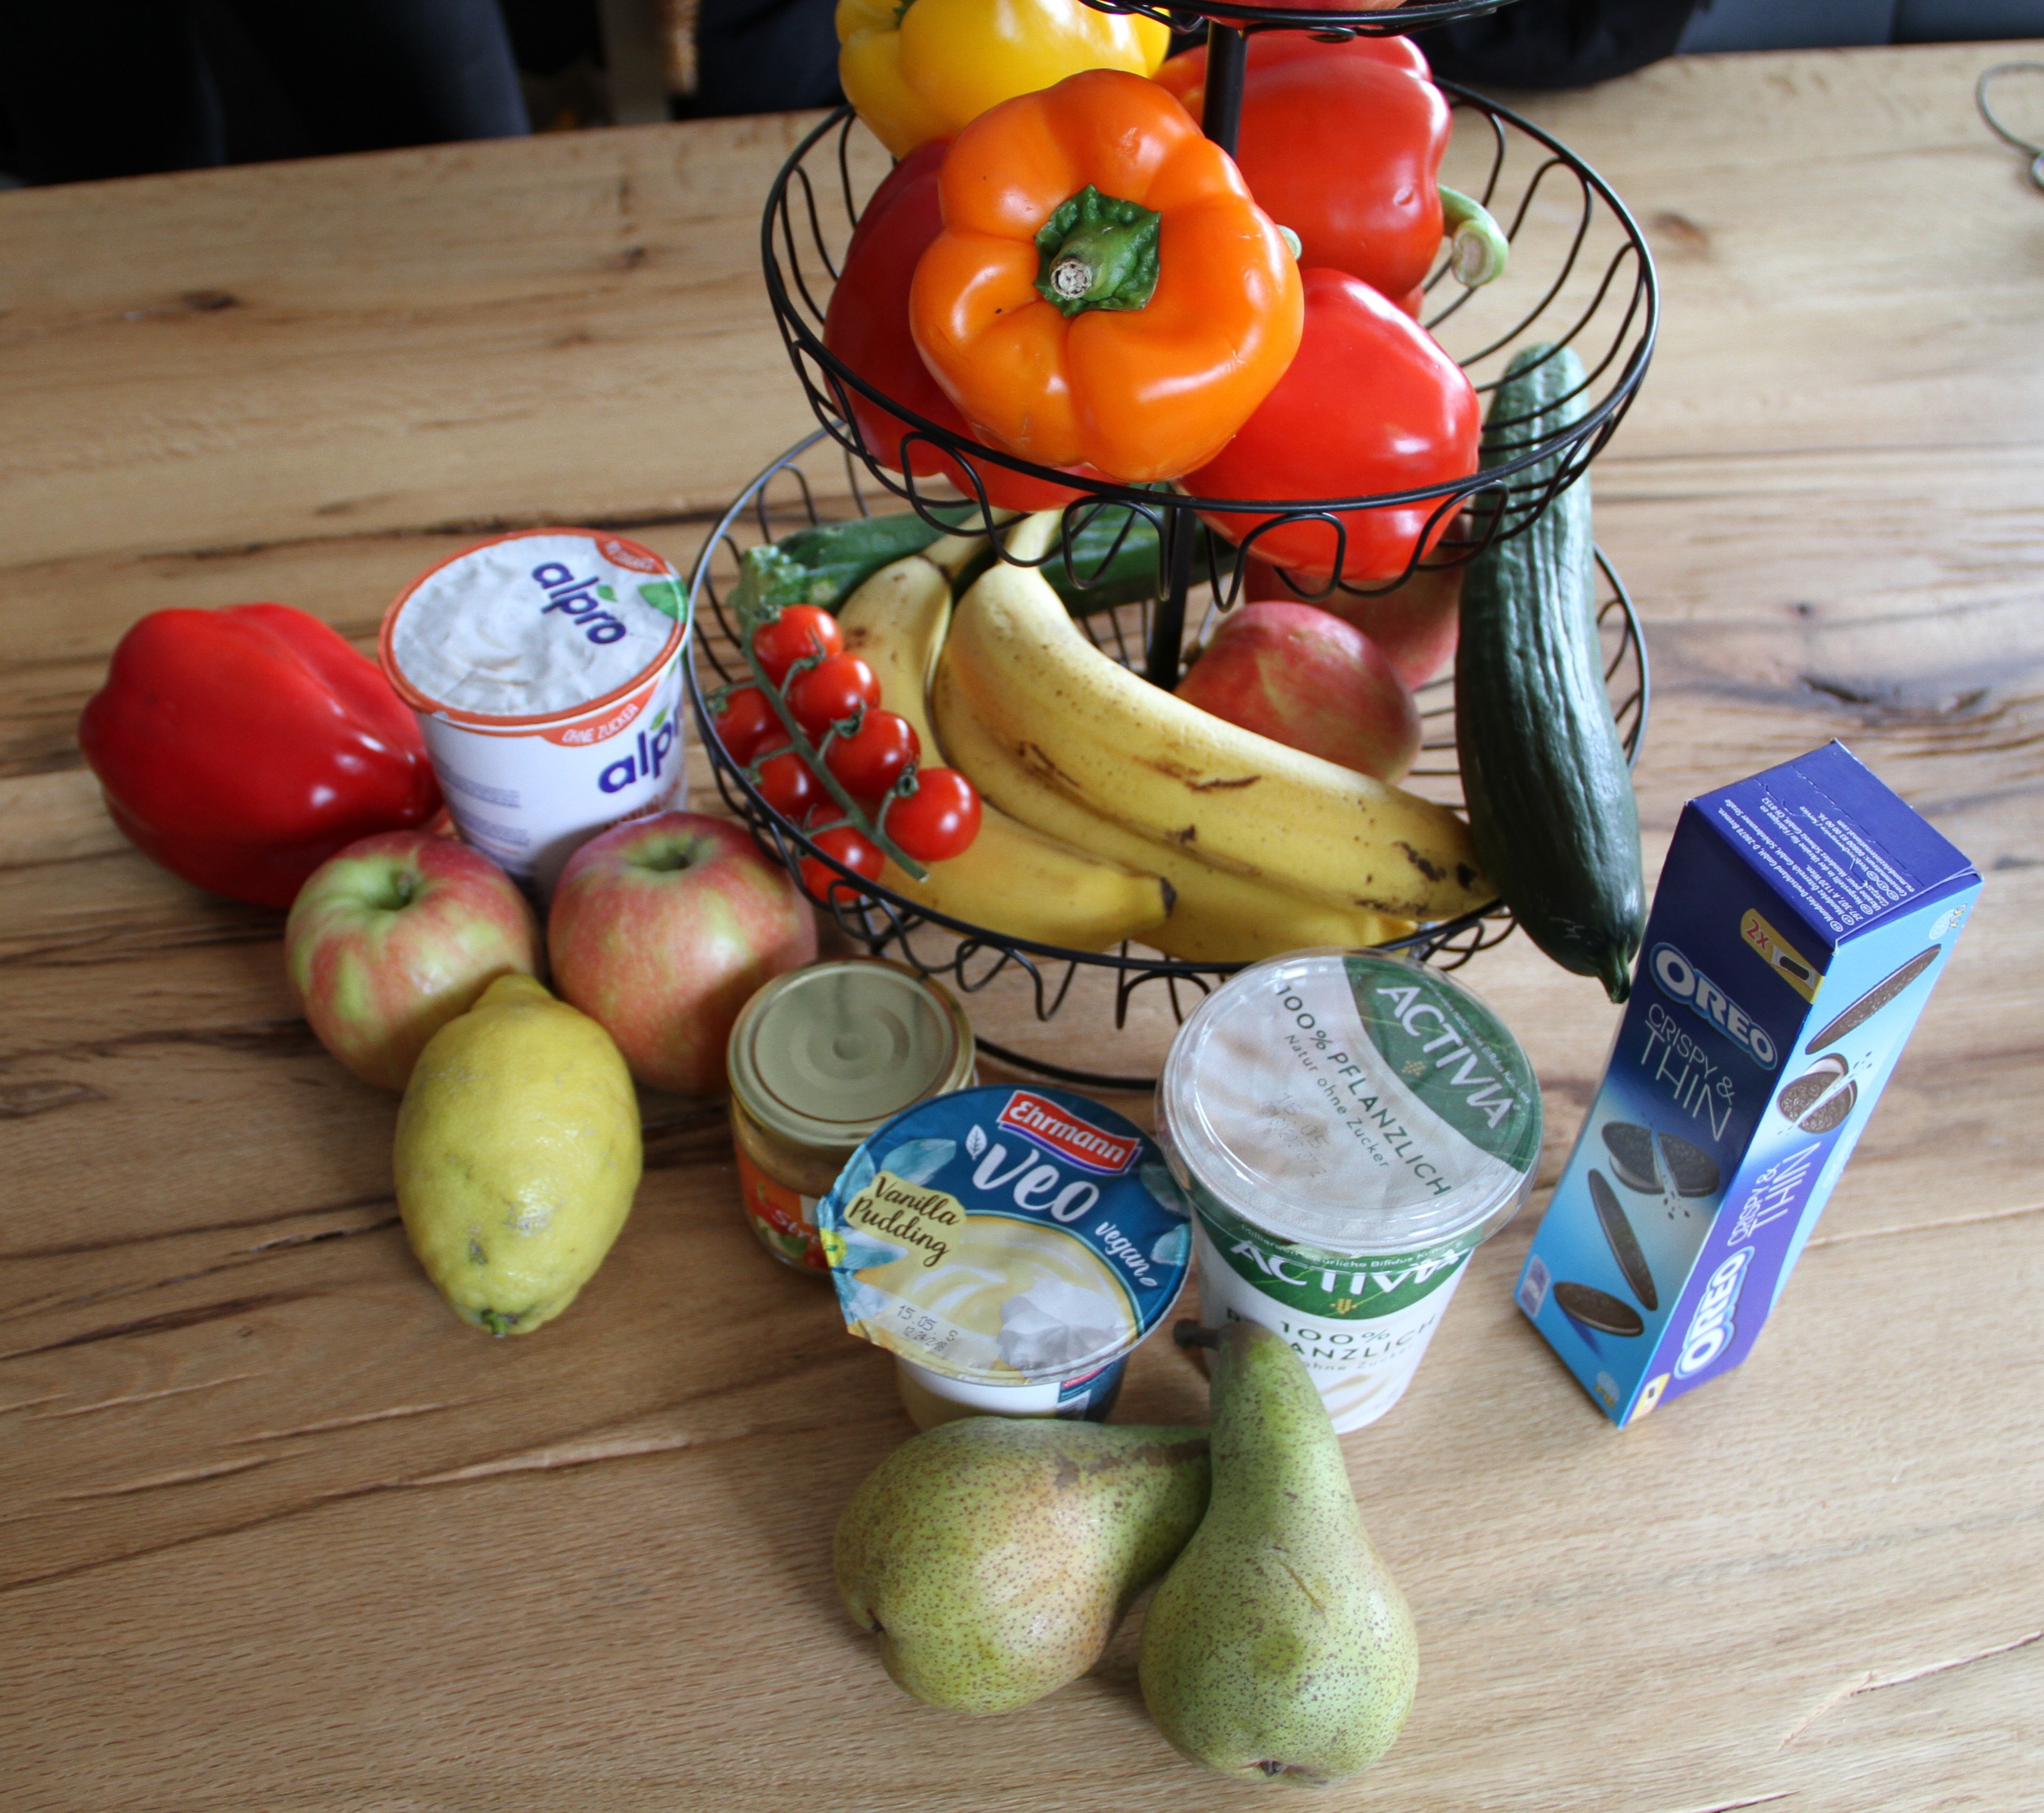 Obst, Gemüse, vegane Produkte aus dem Bio-Laden oder dem Supermarkt: Vegane Ernährung kann gesund sein, muss sie aber nicht, weiß Leonie. von Kerstin Sauer